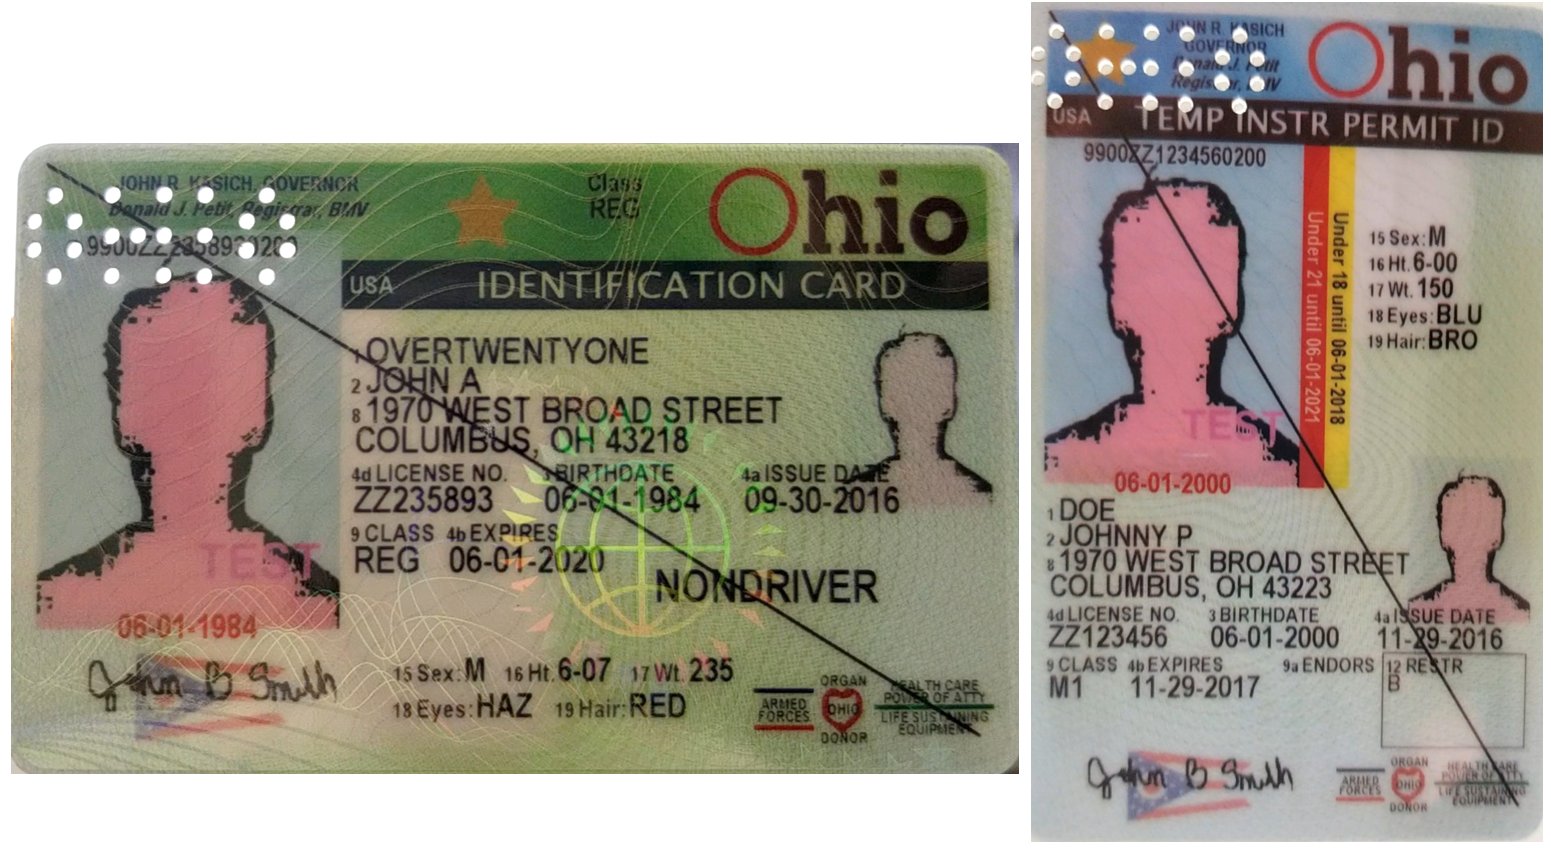 Ohio tsa drivers license